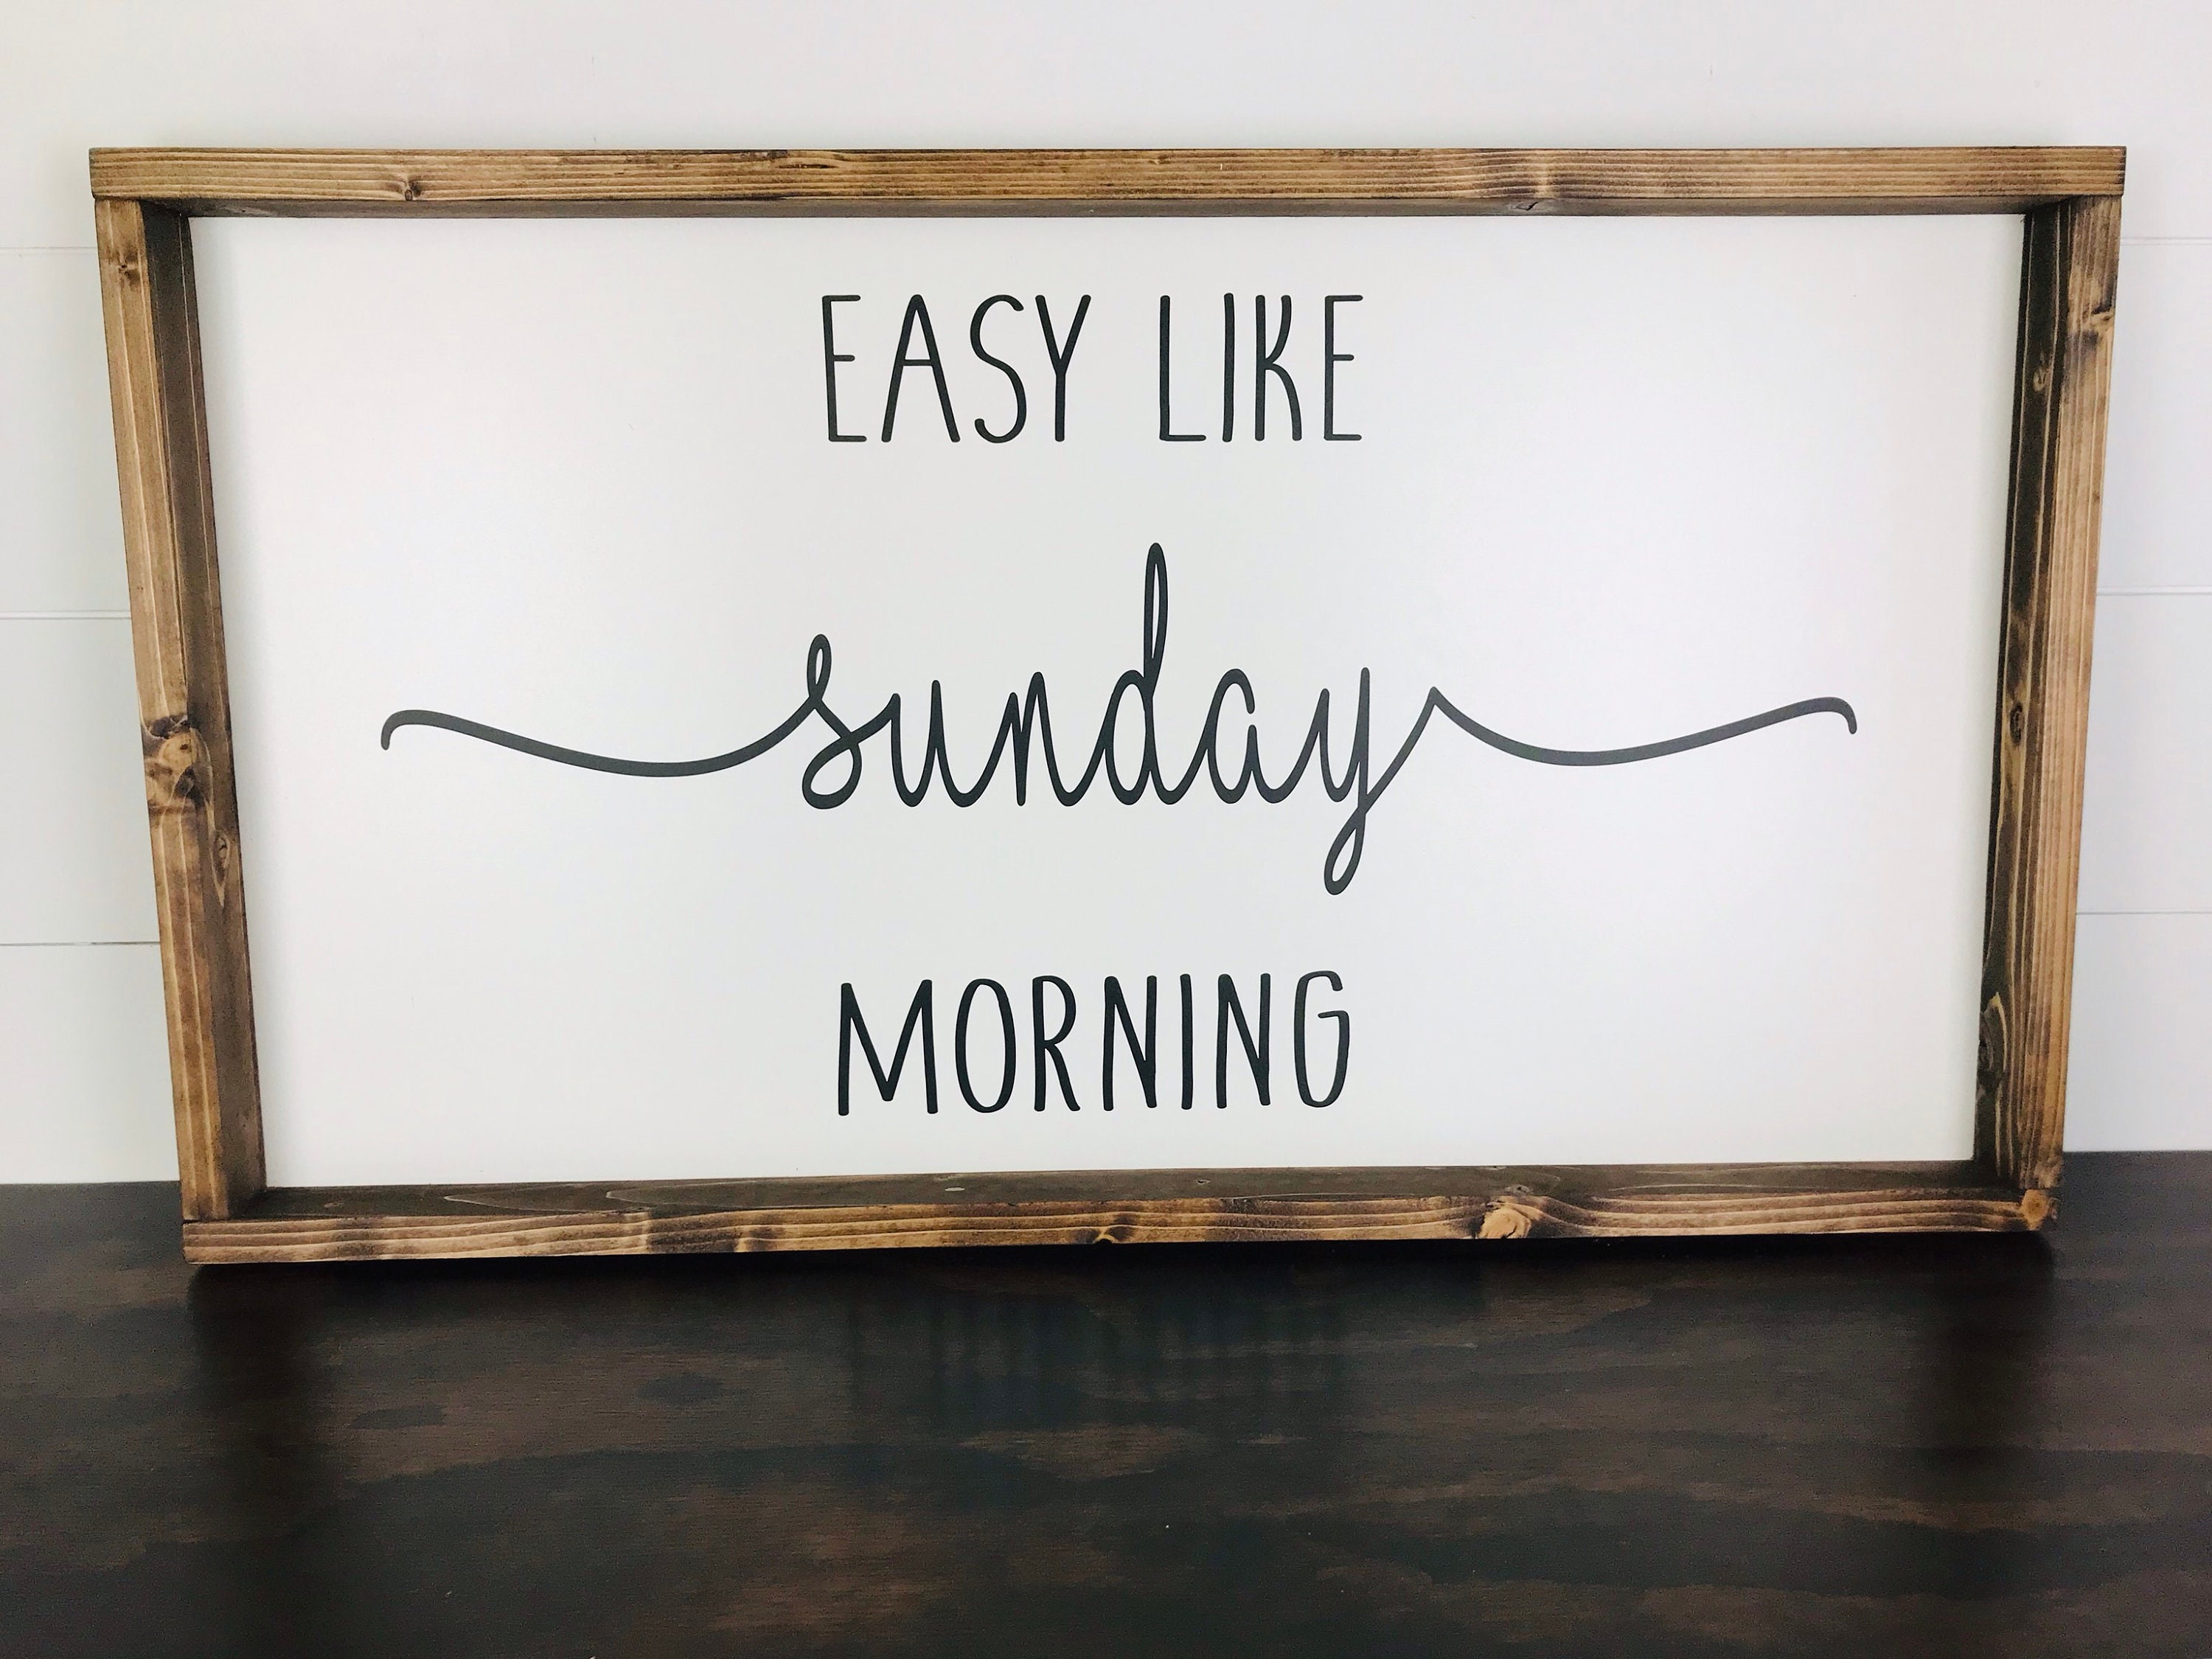 Easy like go. Easy like Sunday morning. Sunday morning Wood. Quote sign.